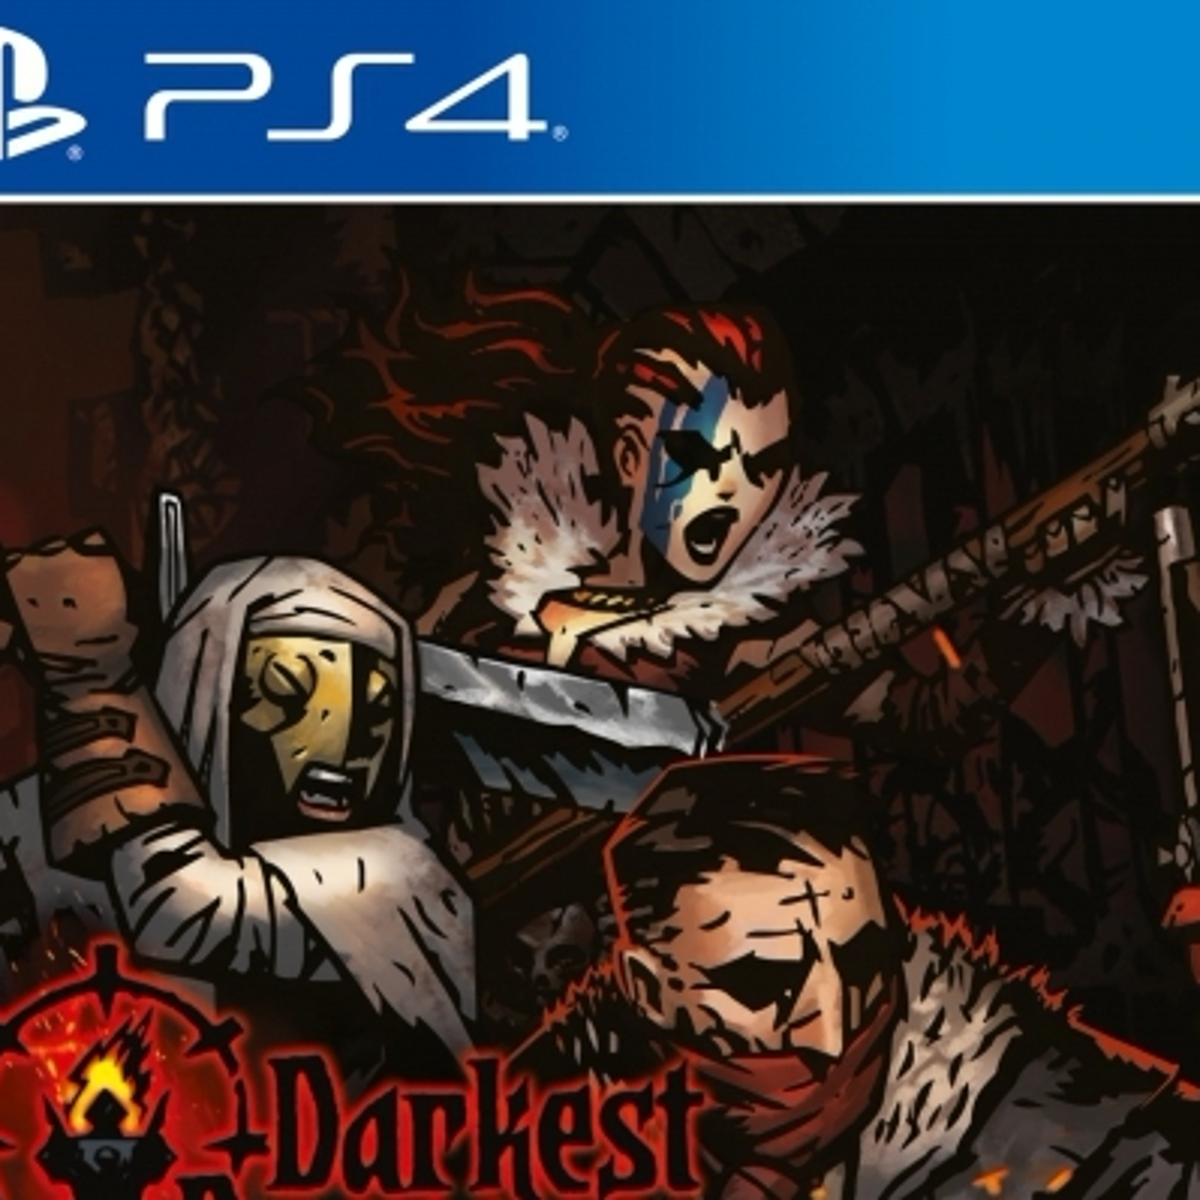 estación de televisión Goma de dinero Fe ciega Darkest Dungeon tendrá edición física para PS4 y Switch | Eurogamer.es